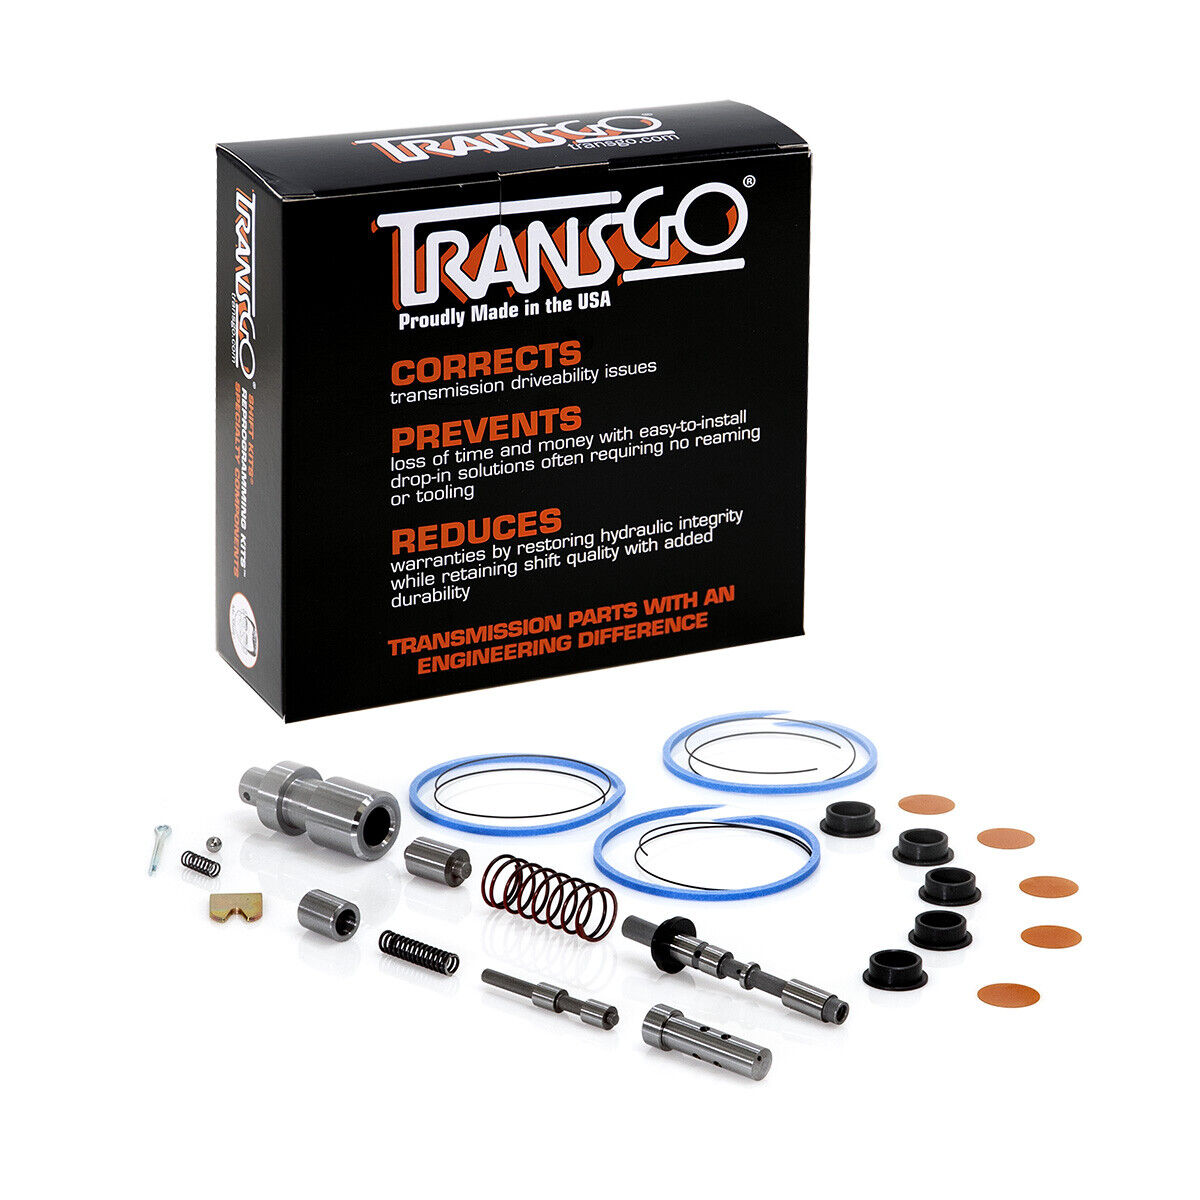 Transgo Shift Kit 6L80 6L80E 6L90 6L90E SK6L80 2006-On